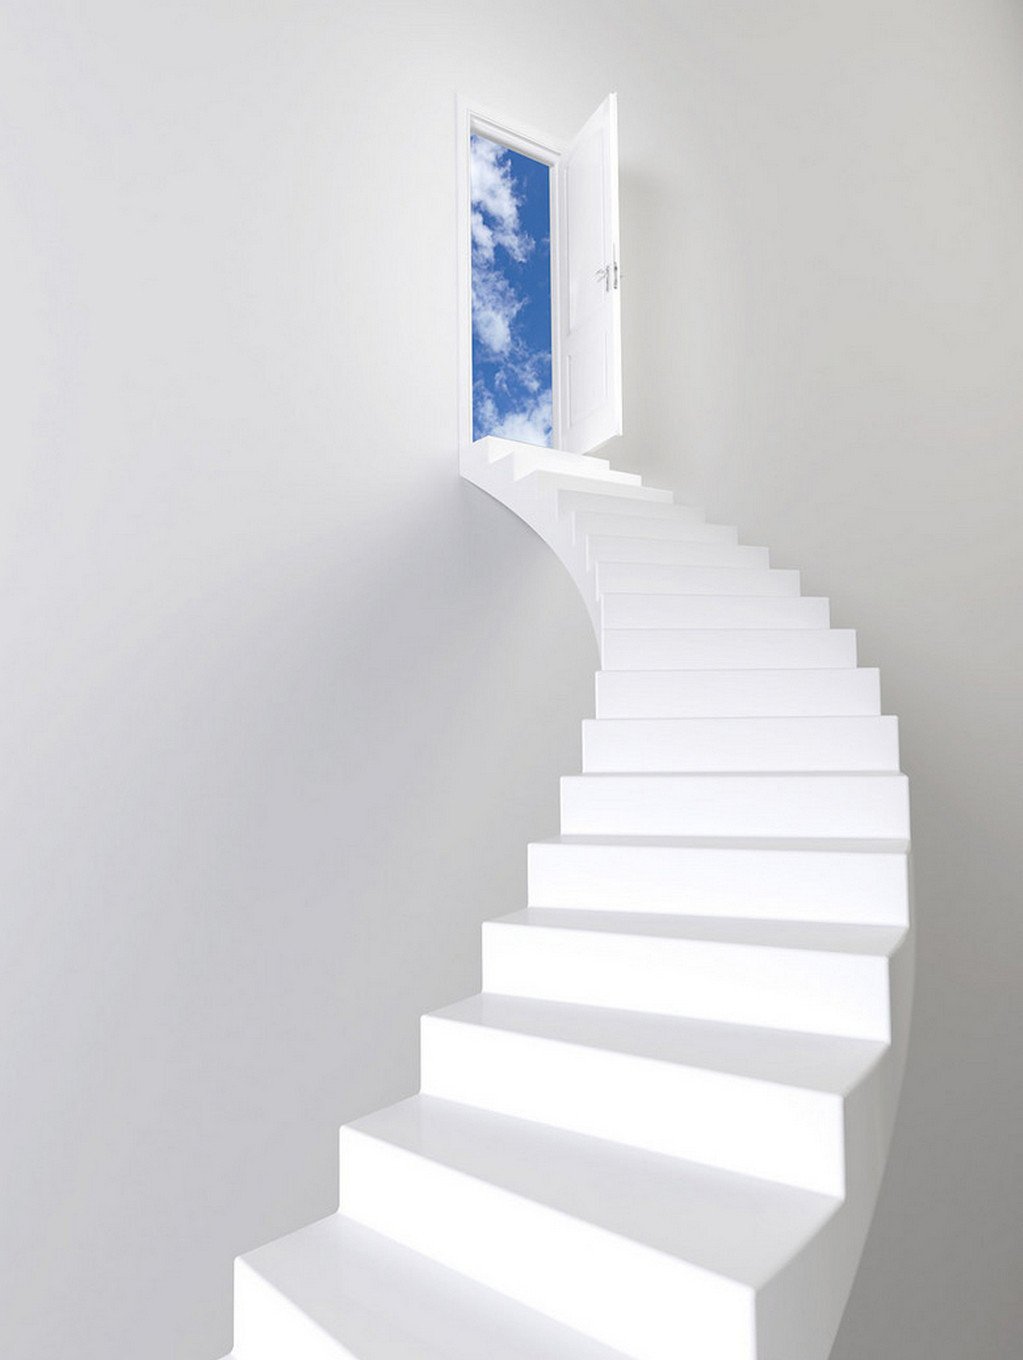 3D stairway to the window of the sky door mural Wallpaper AJ Wallpaper 